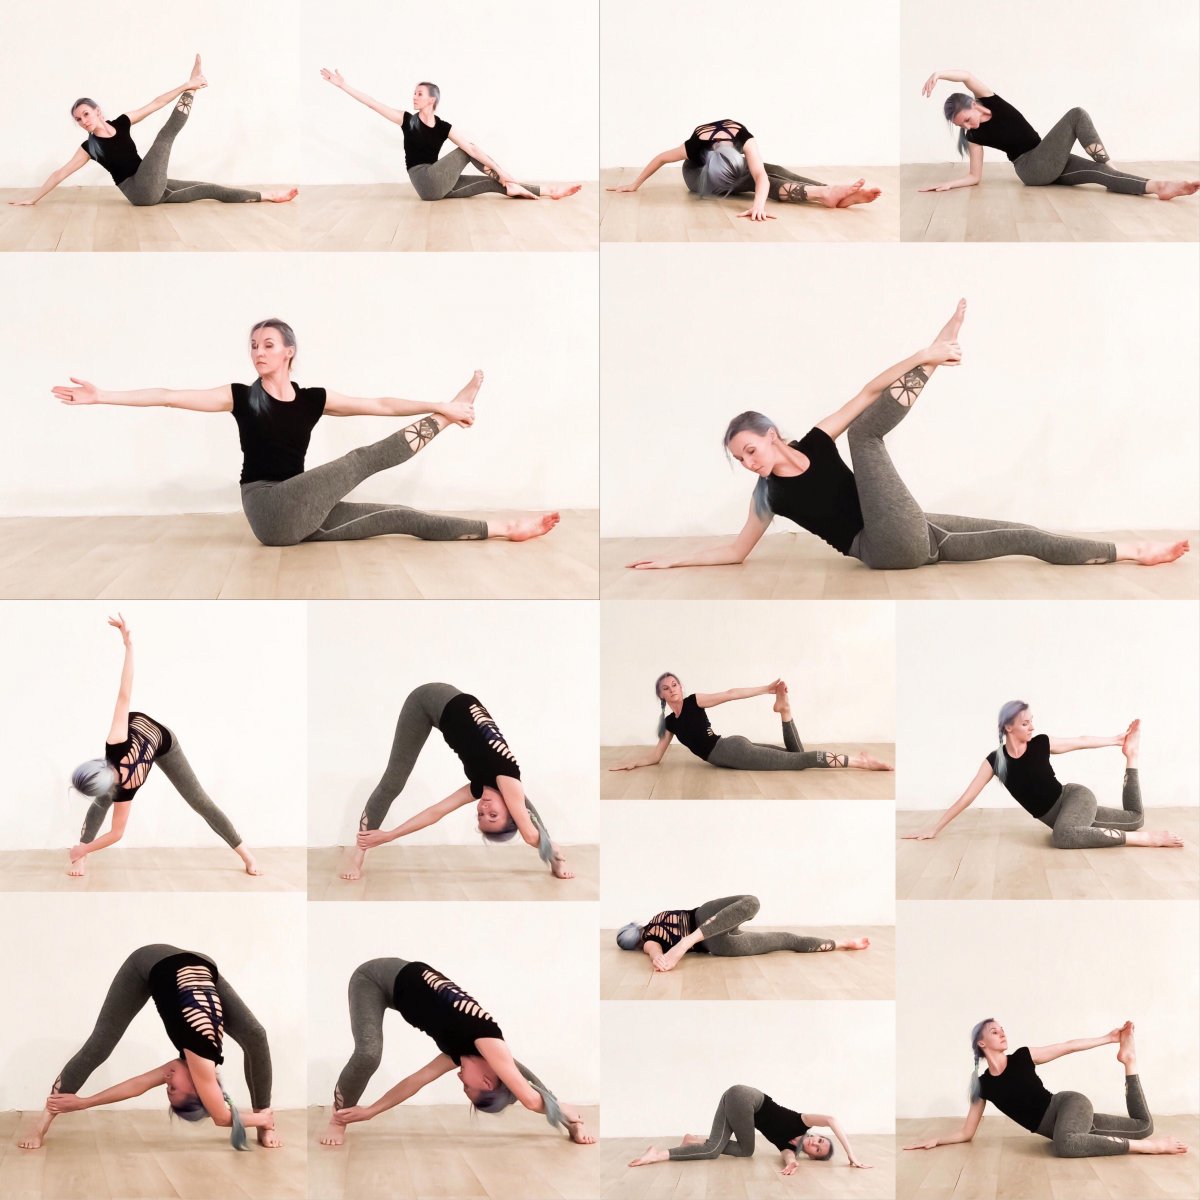 Хатха йога для начинающих комплекс упражнений